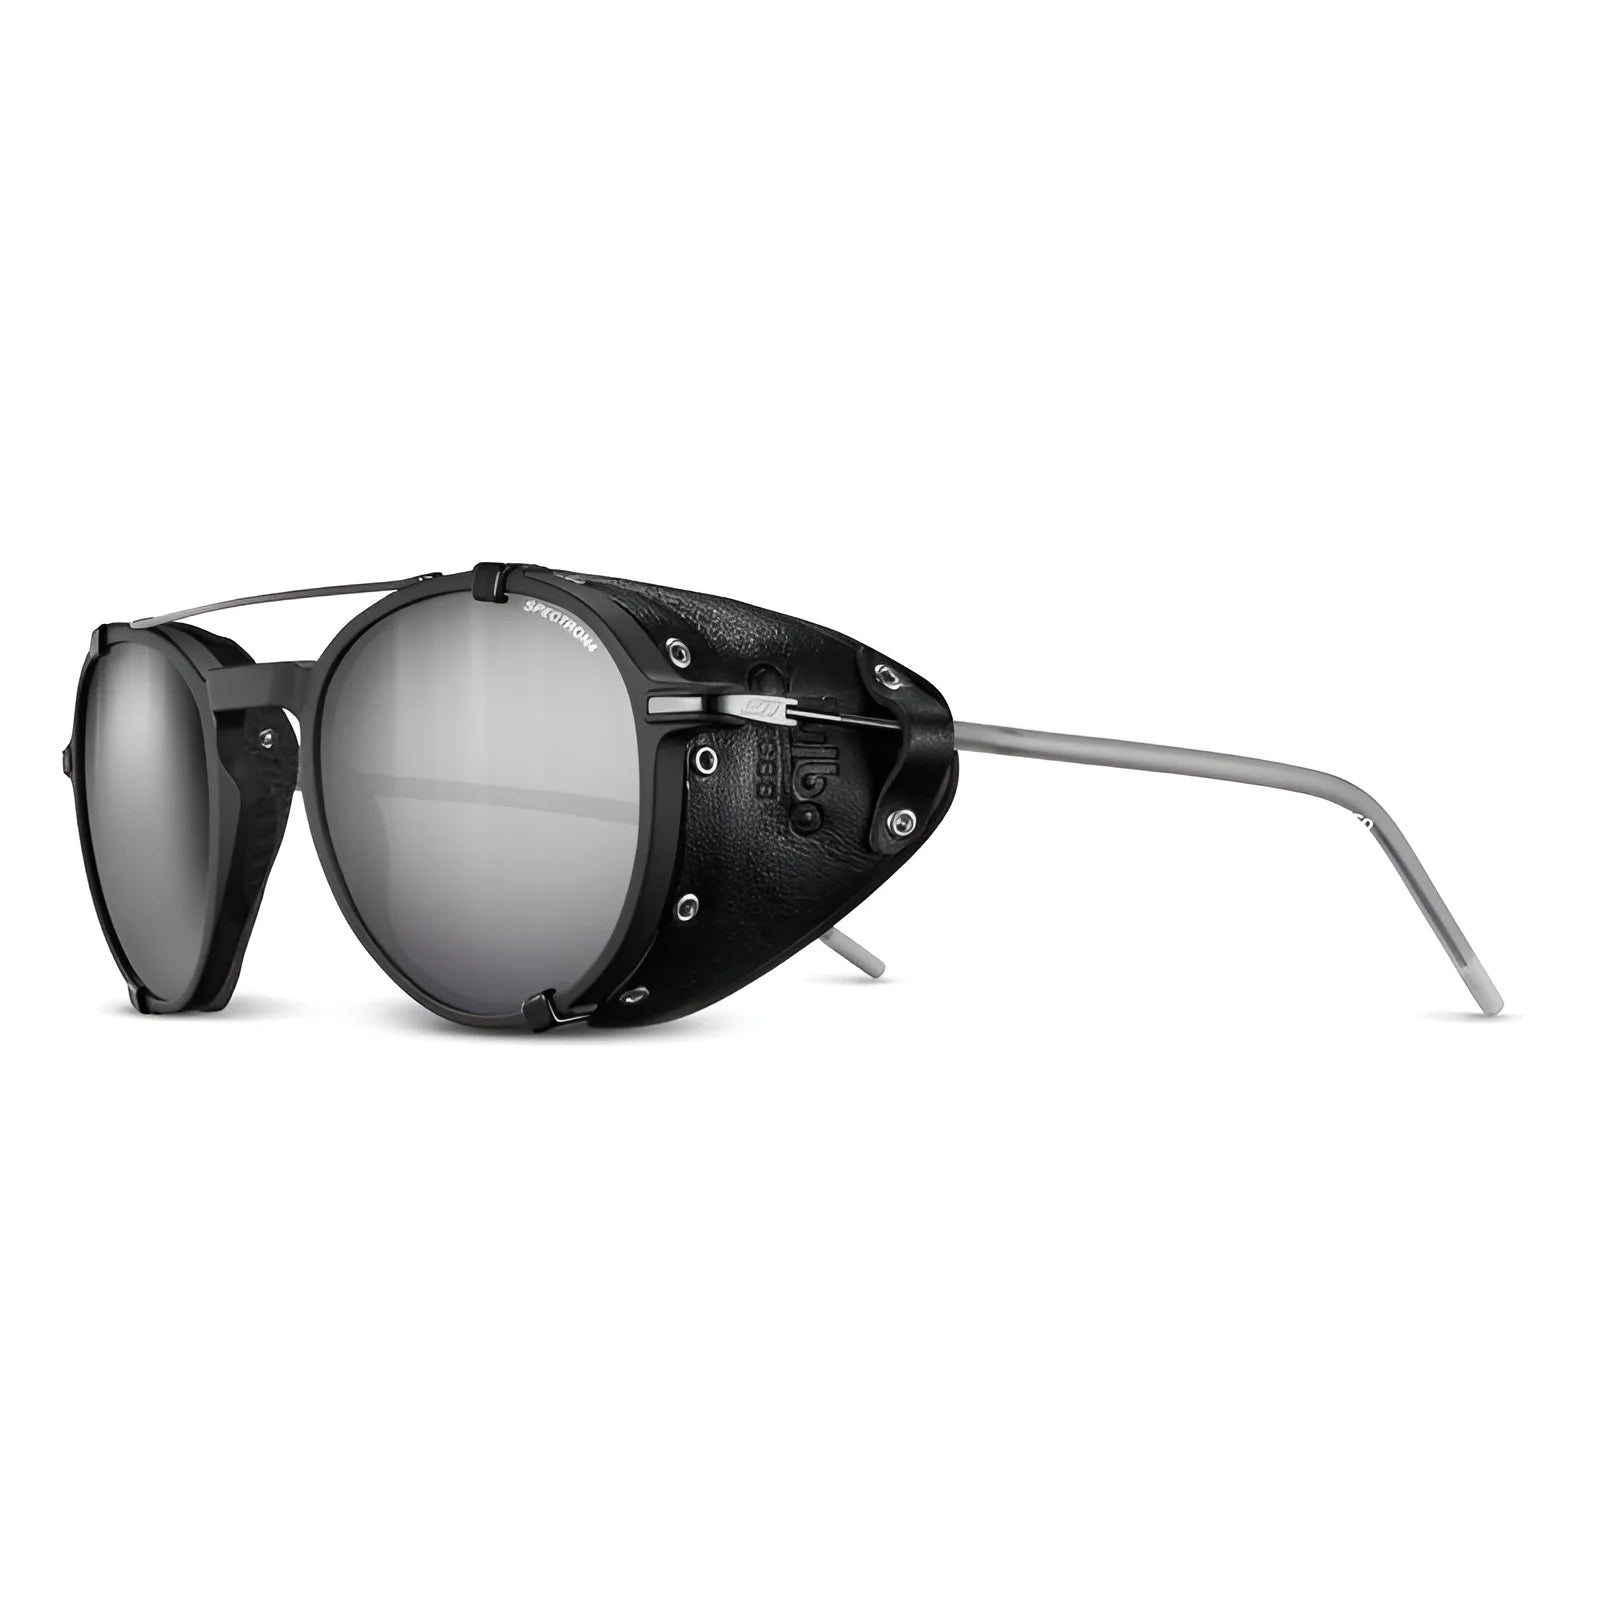 Julbo Legacy Sunglasses Black / White / Black / Spectron 4 (VLT 5%)